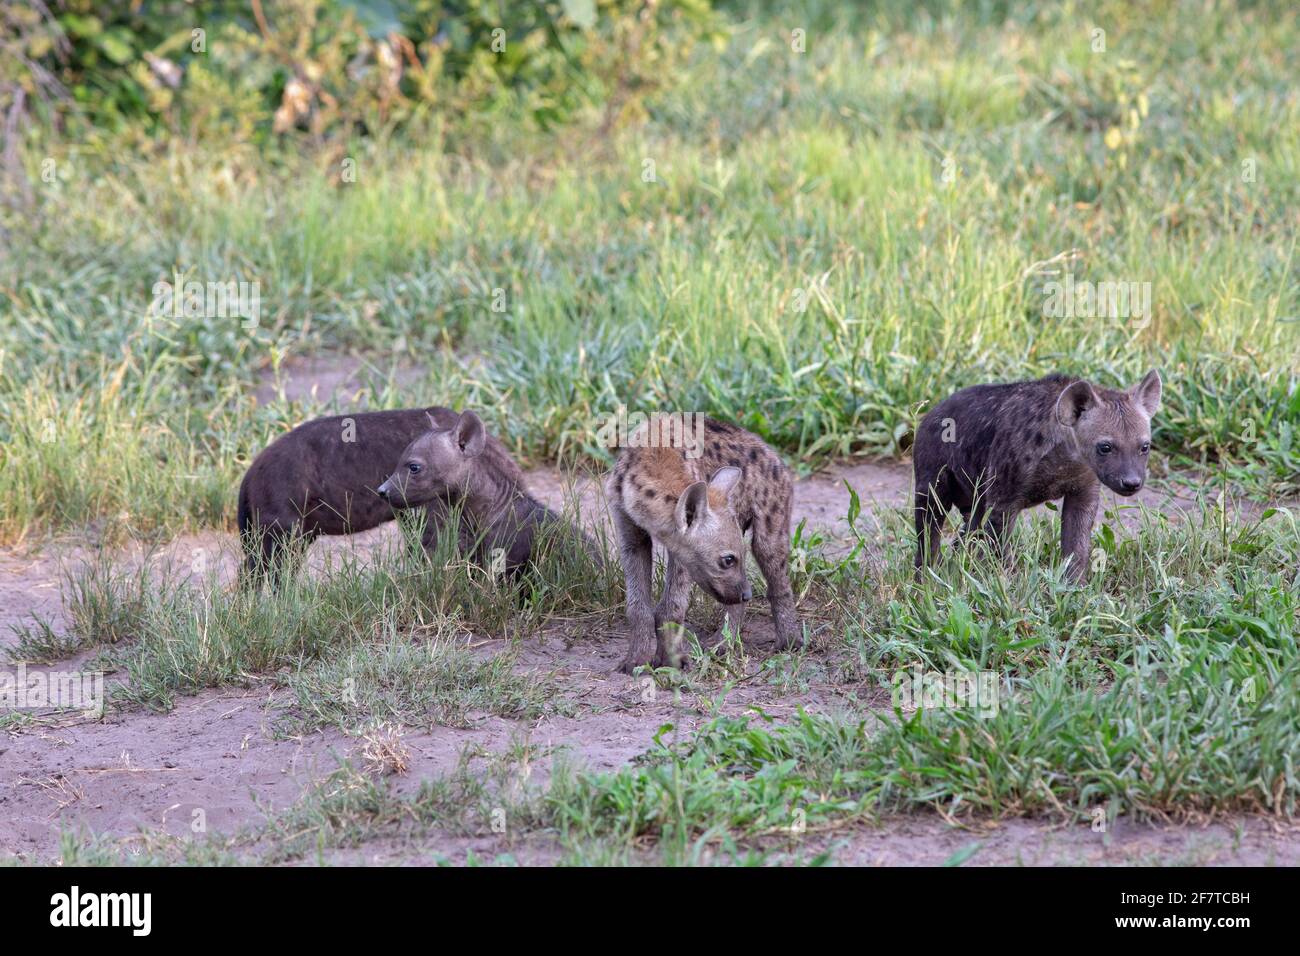 Gepunktete Hyena, Hyena (Crocuta crocuta). Jungtiere oder Jungtiere, jung unterschiedlichen Alters, von verschiedenen Müttern. Den gemeinschaftlich. Außerhalb ihrer gemeinsamen Höhle. Expl Stockfoto